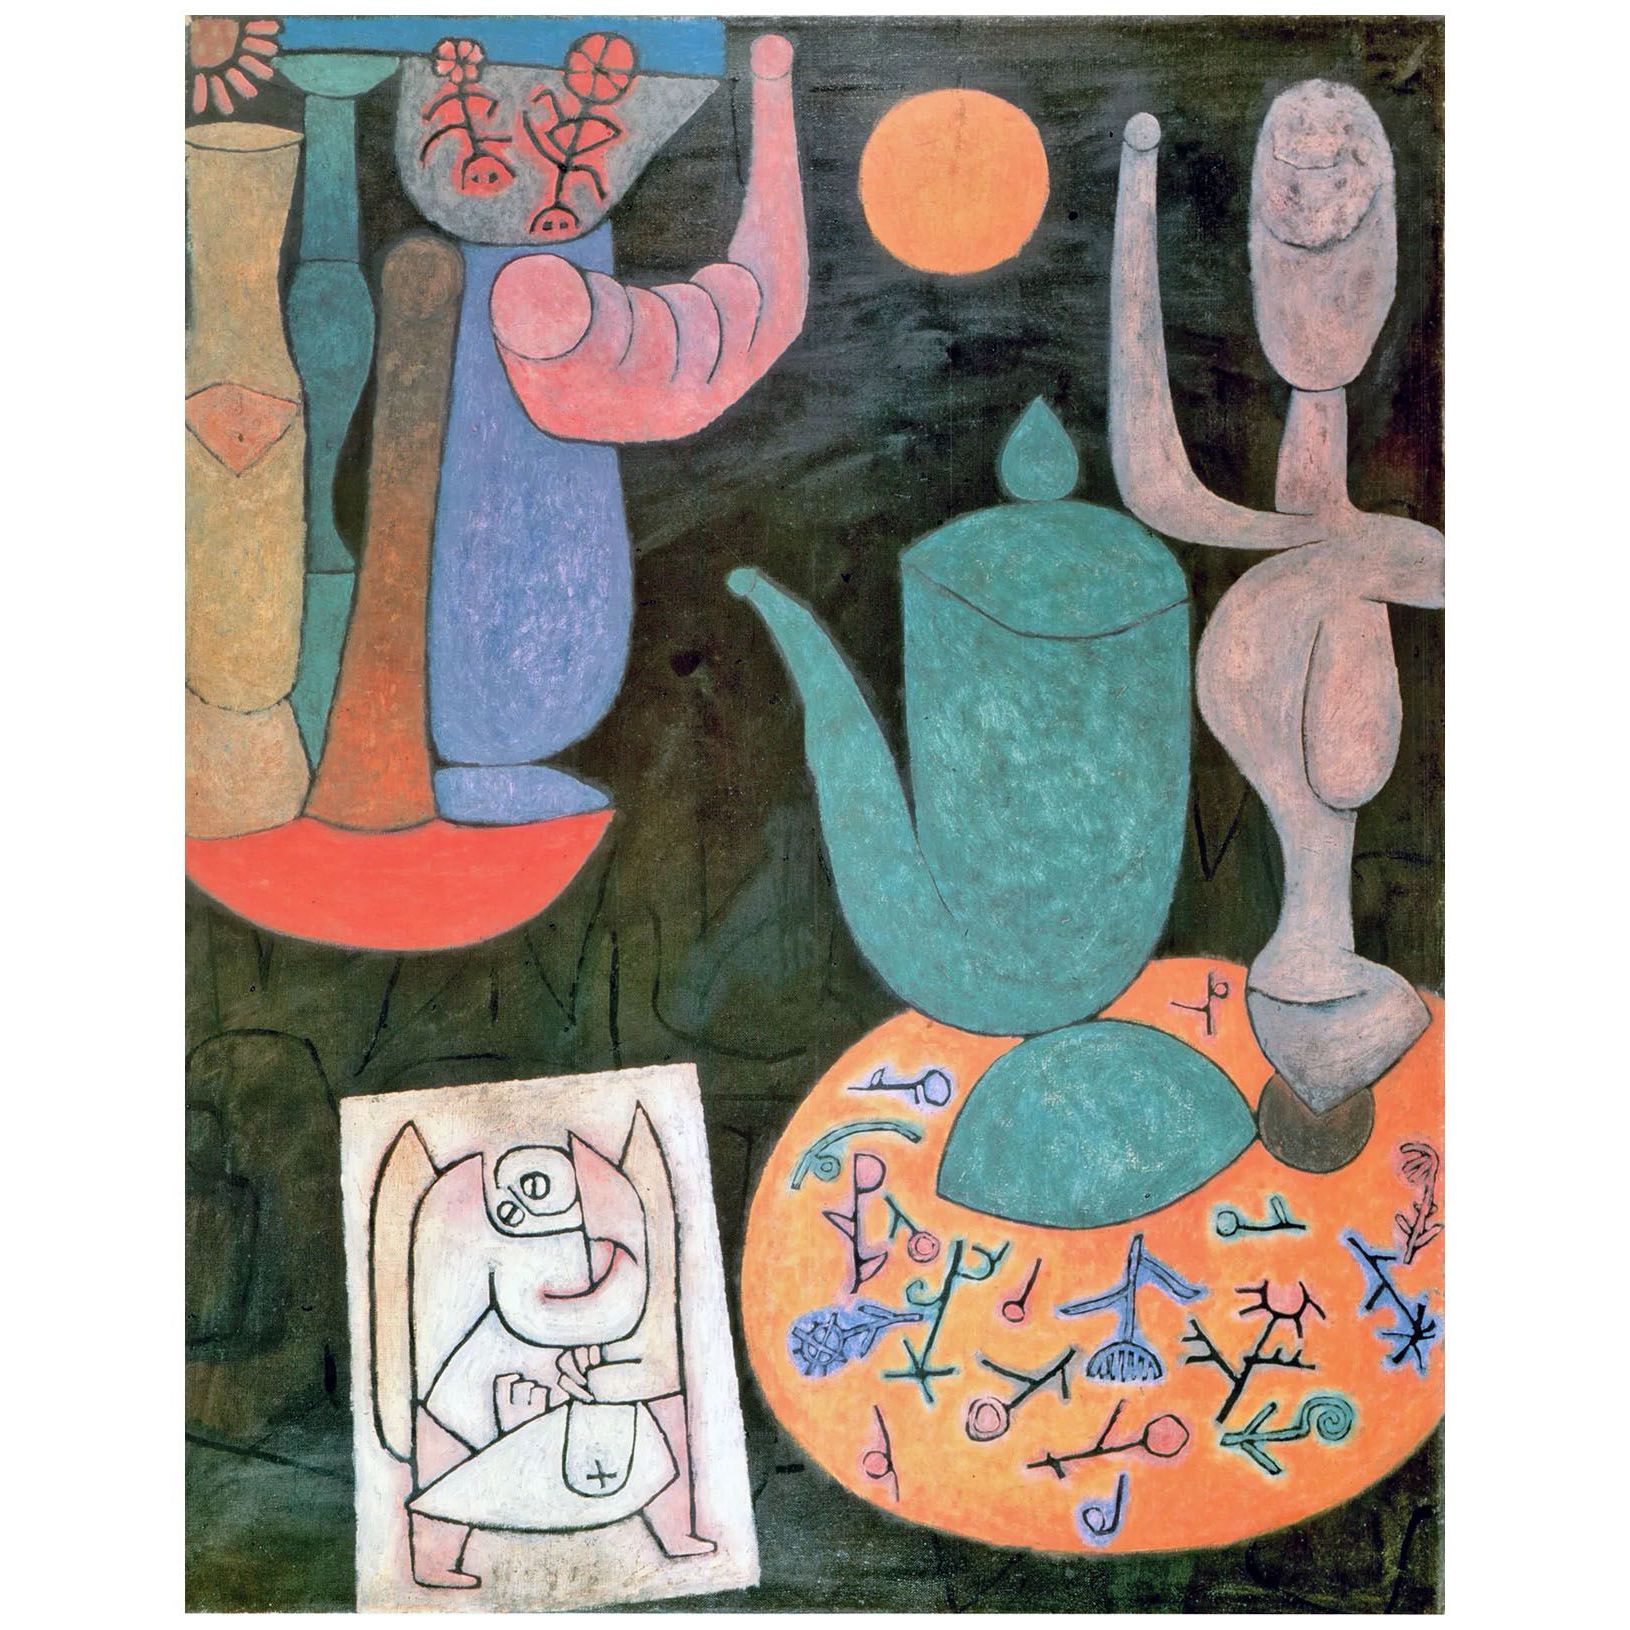 Paul Klee. Komposition auf Schwarzen Grund. 1940. Zentrum Paul Klee, Bern